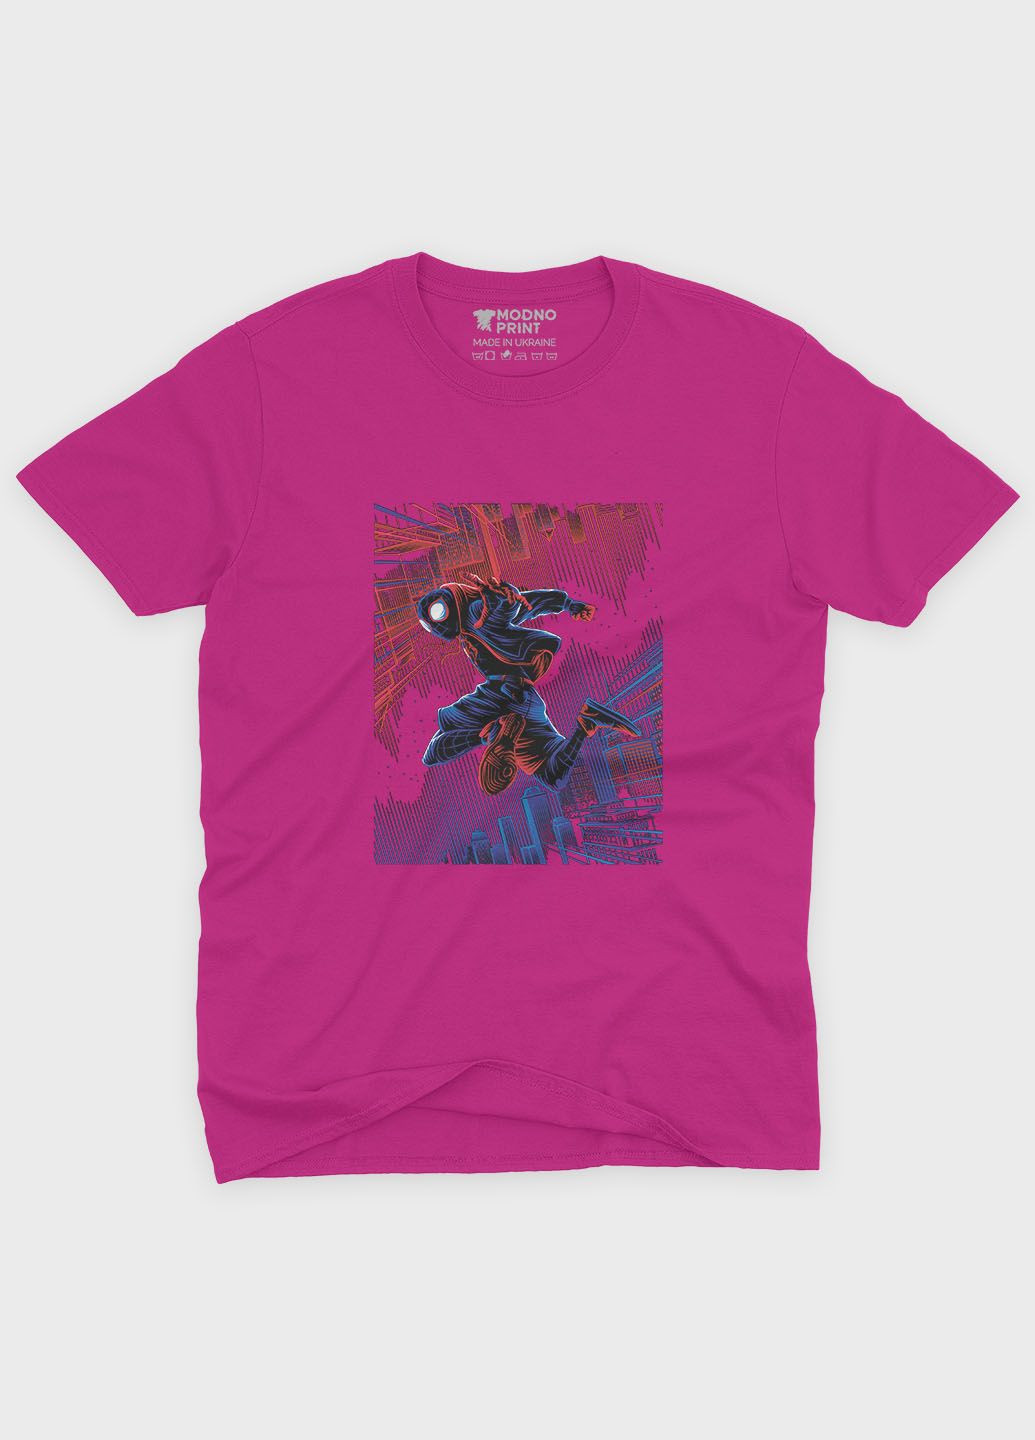 Розовая демисезонная футболка для мальчика с принтом супергероя - человек-паук (ts001-1-fuxj-006-014-061-b) Modno